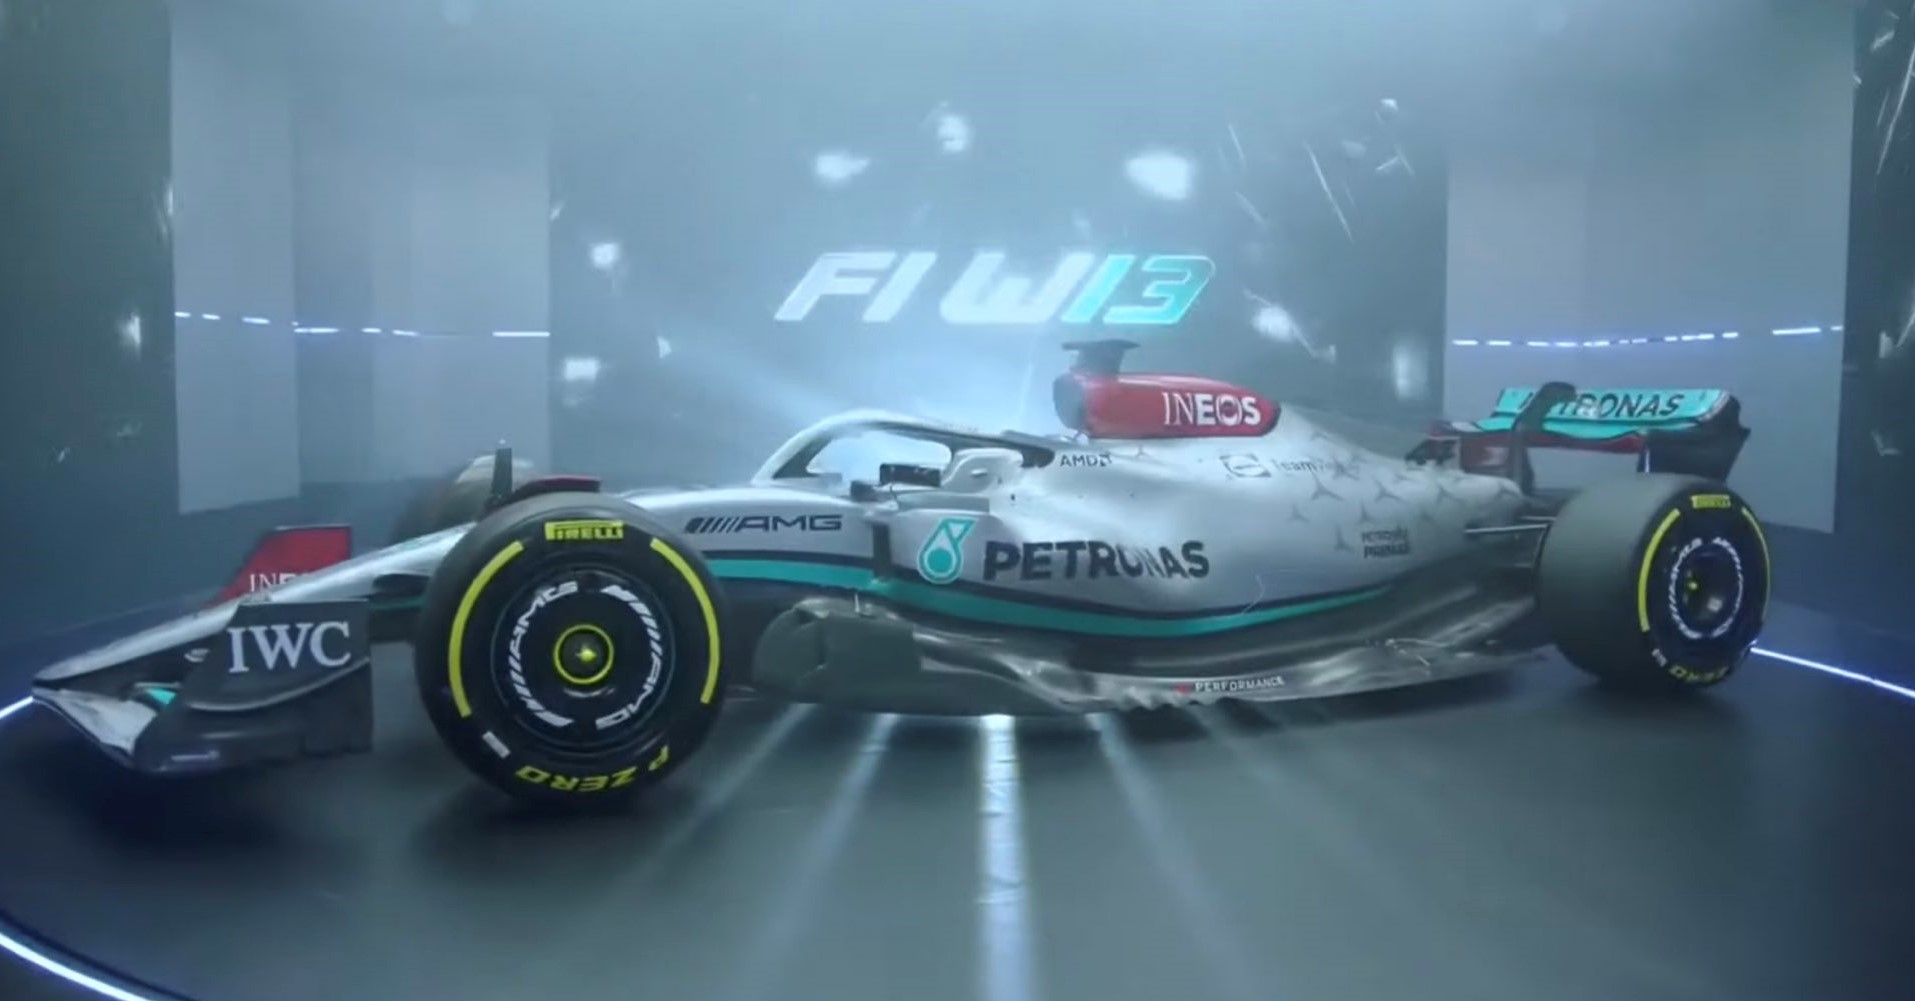 Mercedes presents their 2022 contender, the W13 as Hamilton makes a return